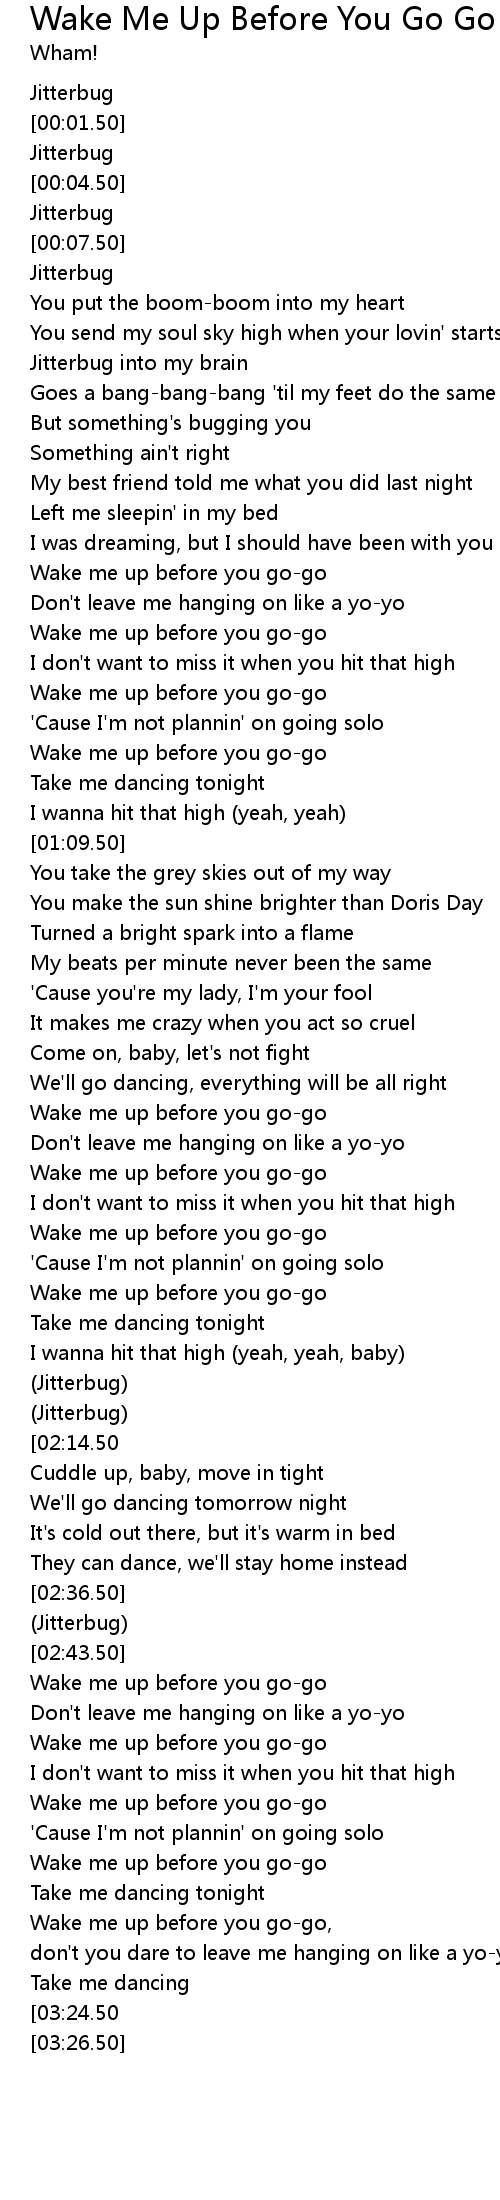 Wake Me Up Before You Go Go Lyrics Follow Lyrics